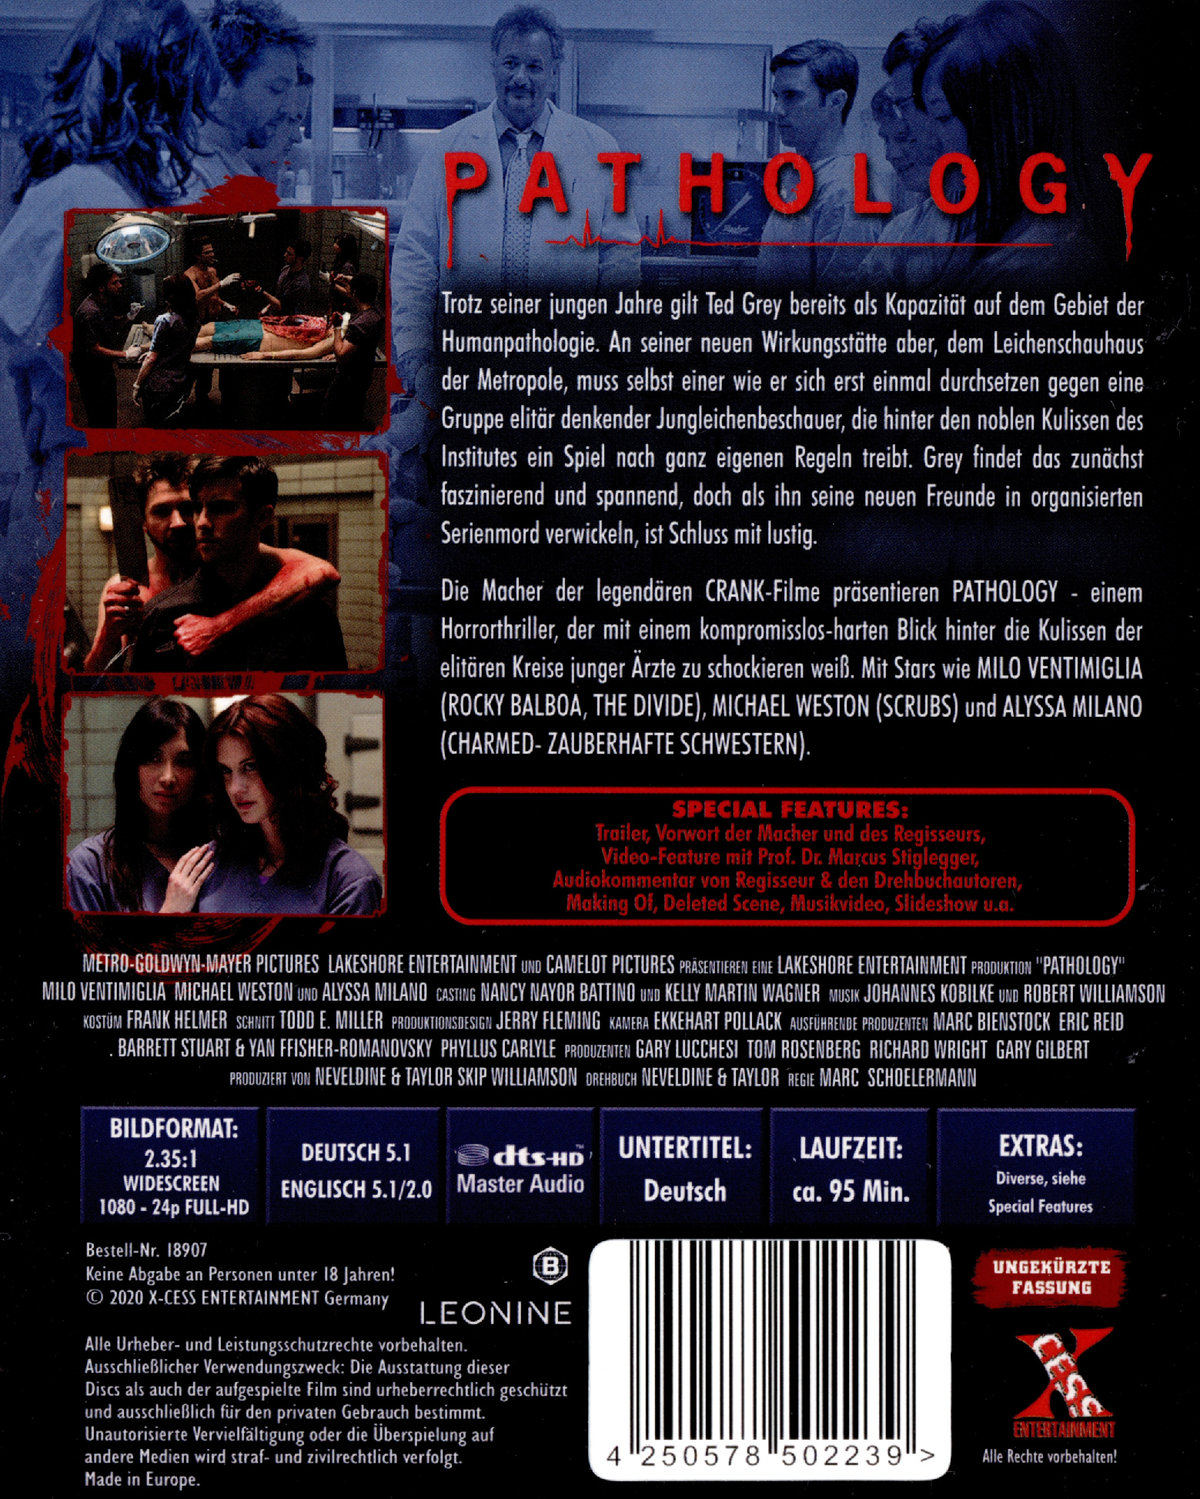 Pathology - Jeder hat ein Geheimnis - Uncut Edition (blu-ray)